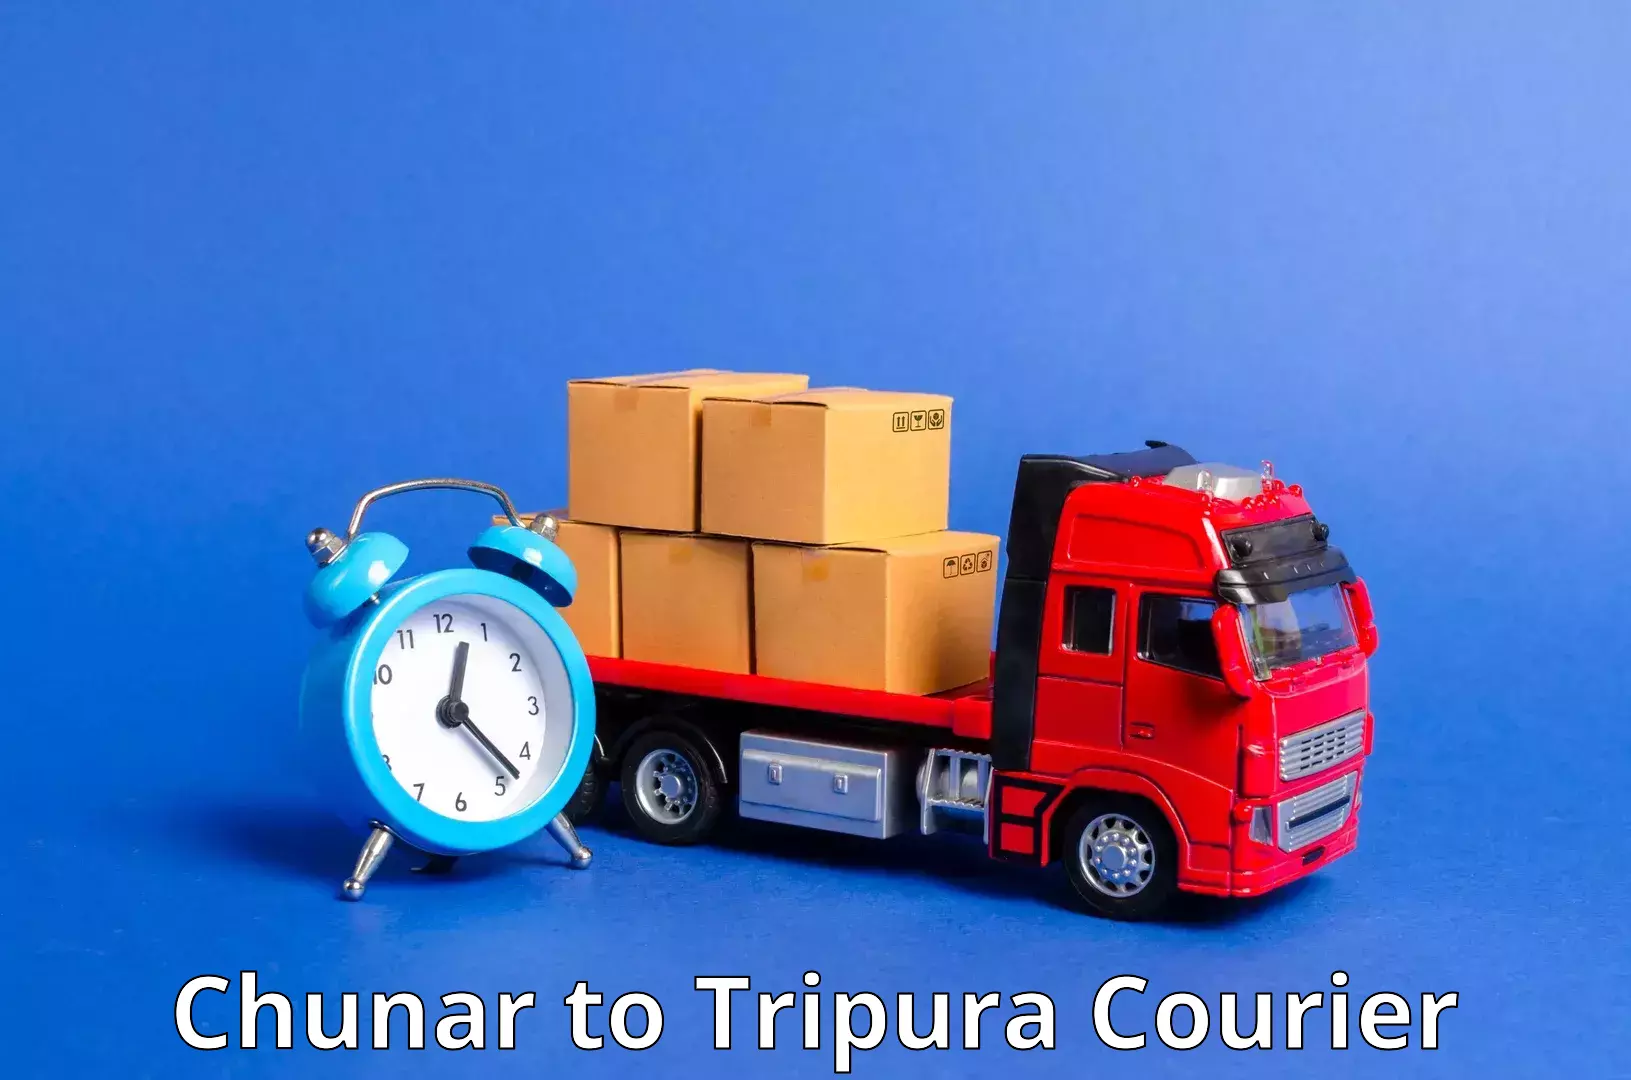 Multi-city courier Chunar to Amarpur